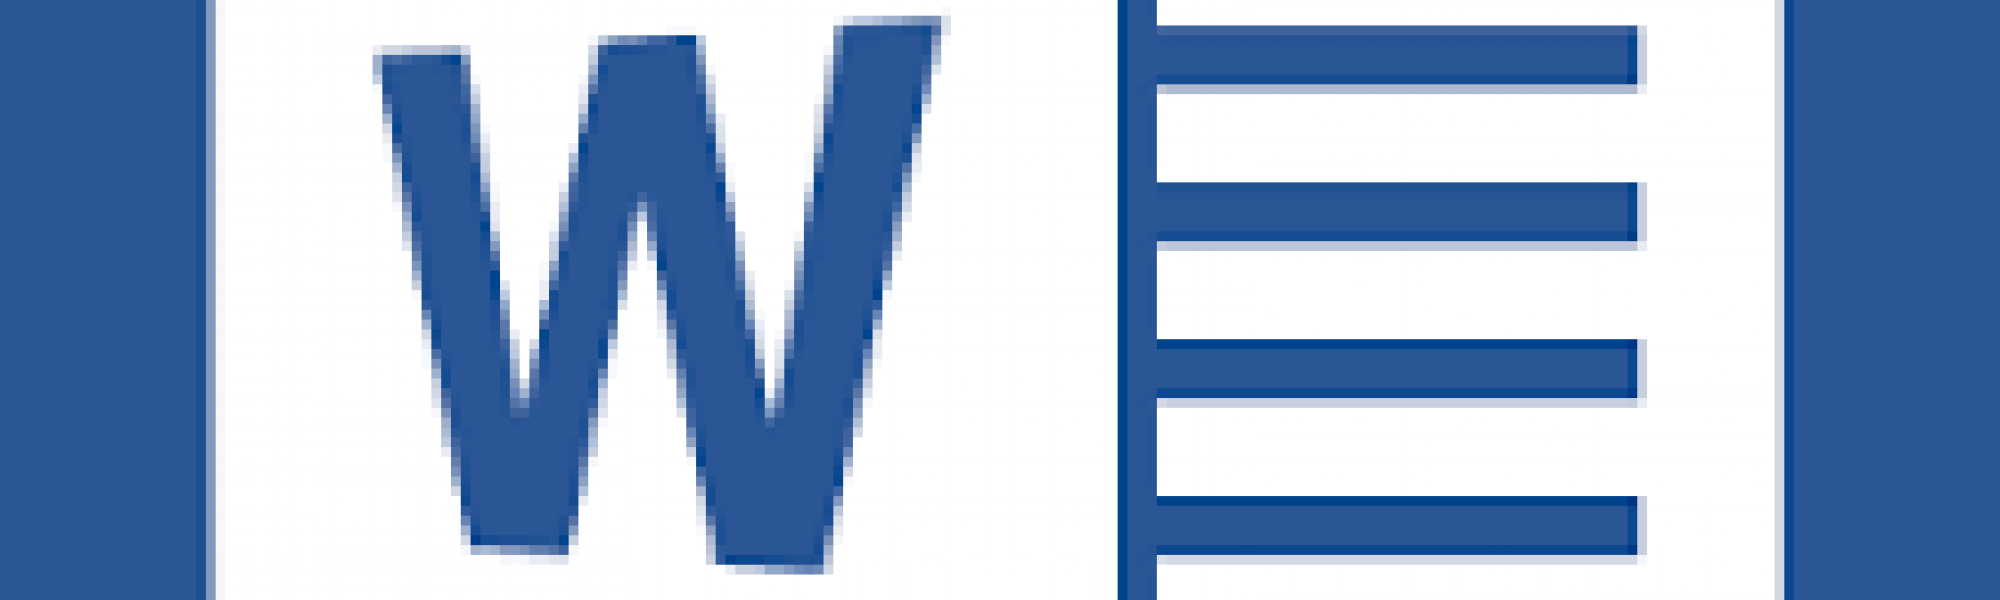 Word 2013 Logo - Word 2013 (32 bit) freezing